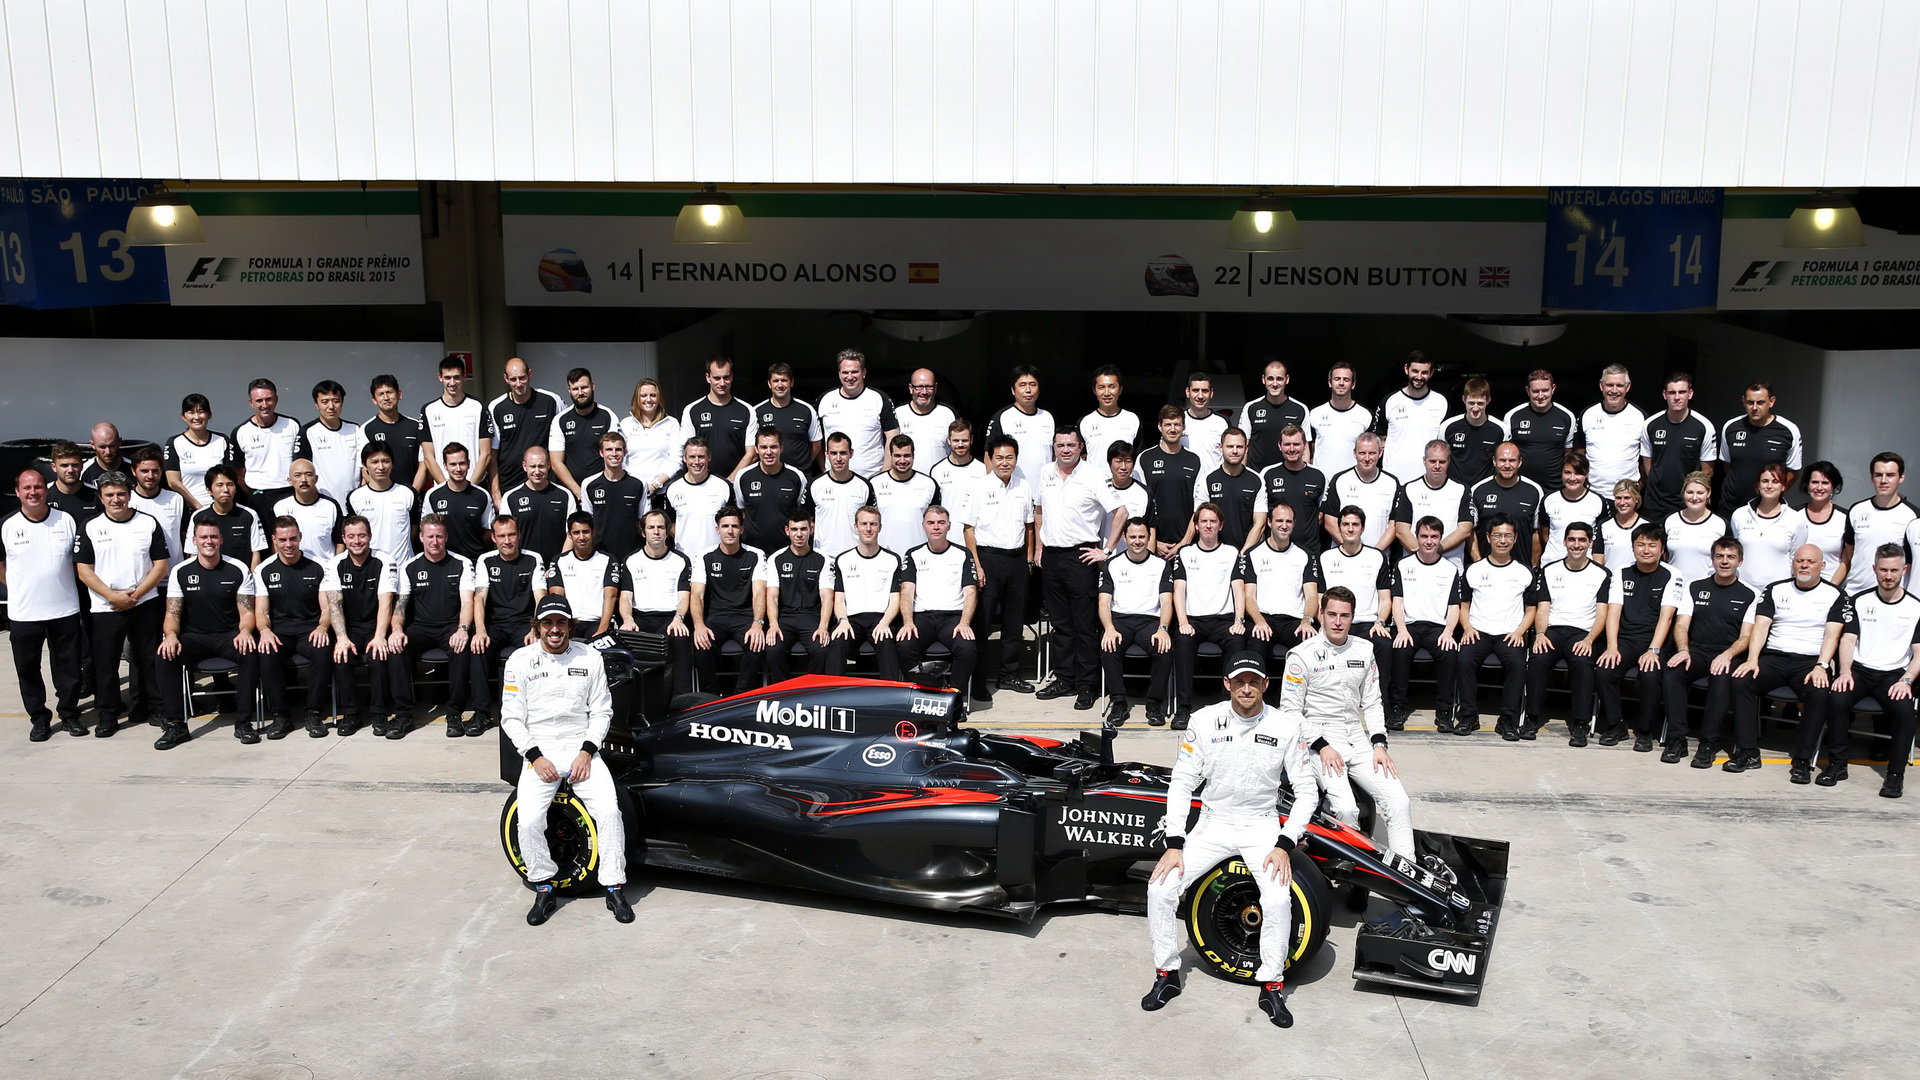 Fanoušci McLarenu museli letos projevovat obzvlášť velkou trpělivost